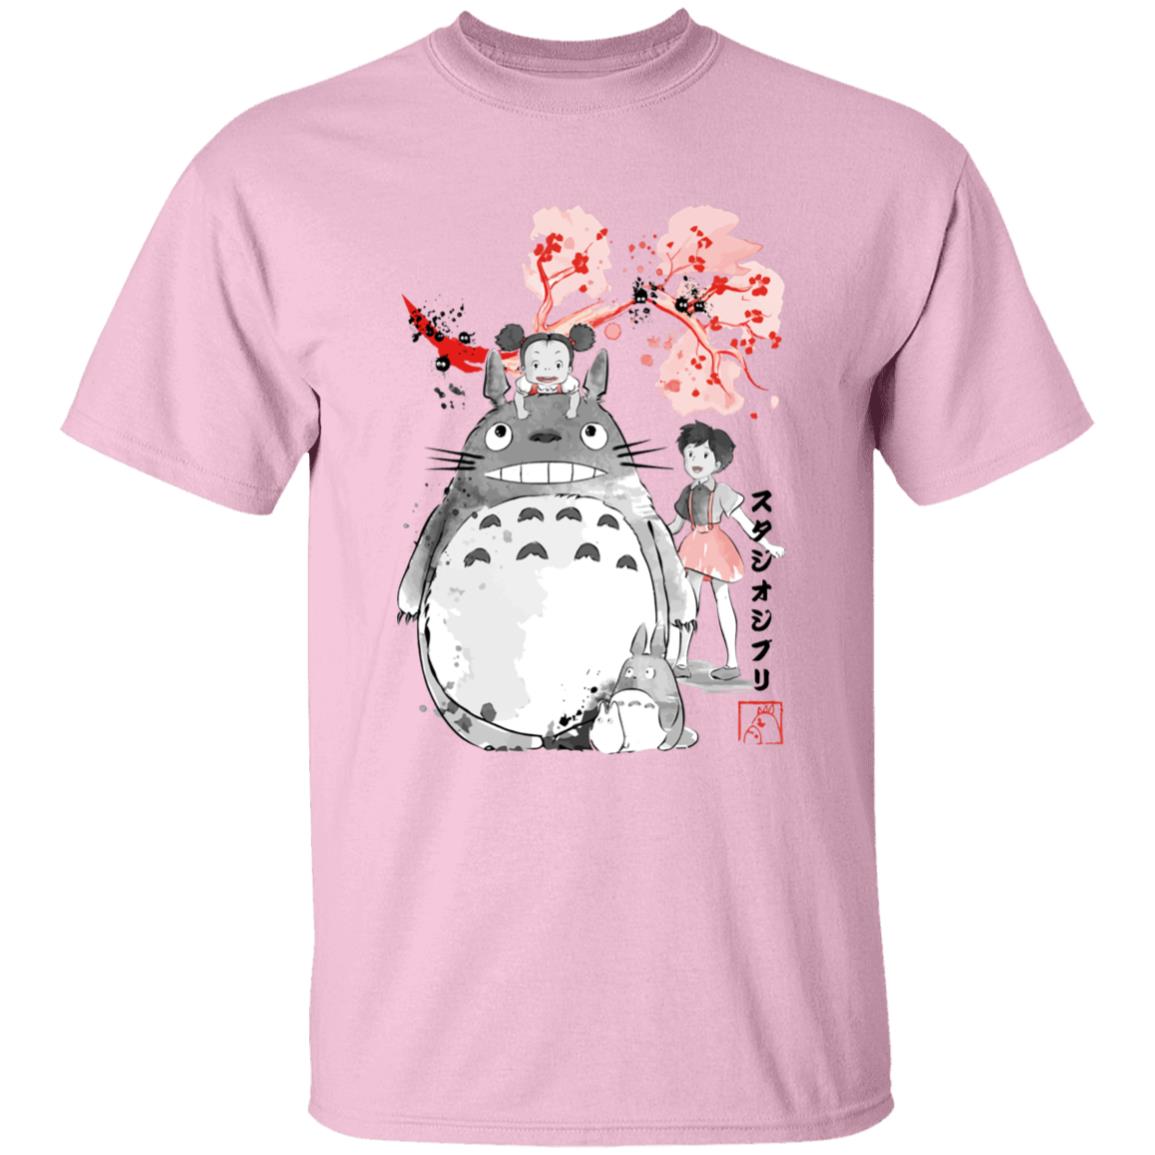 Totoro and the Girls by Sakura Flower T Shirt